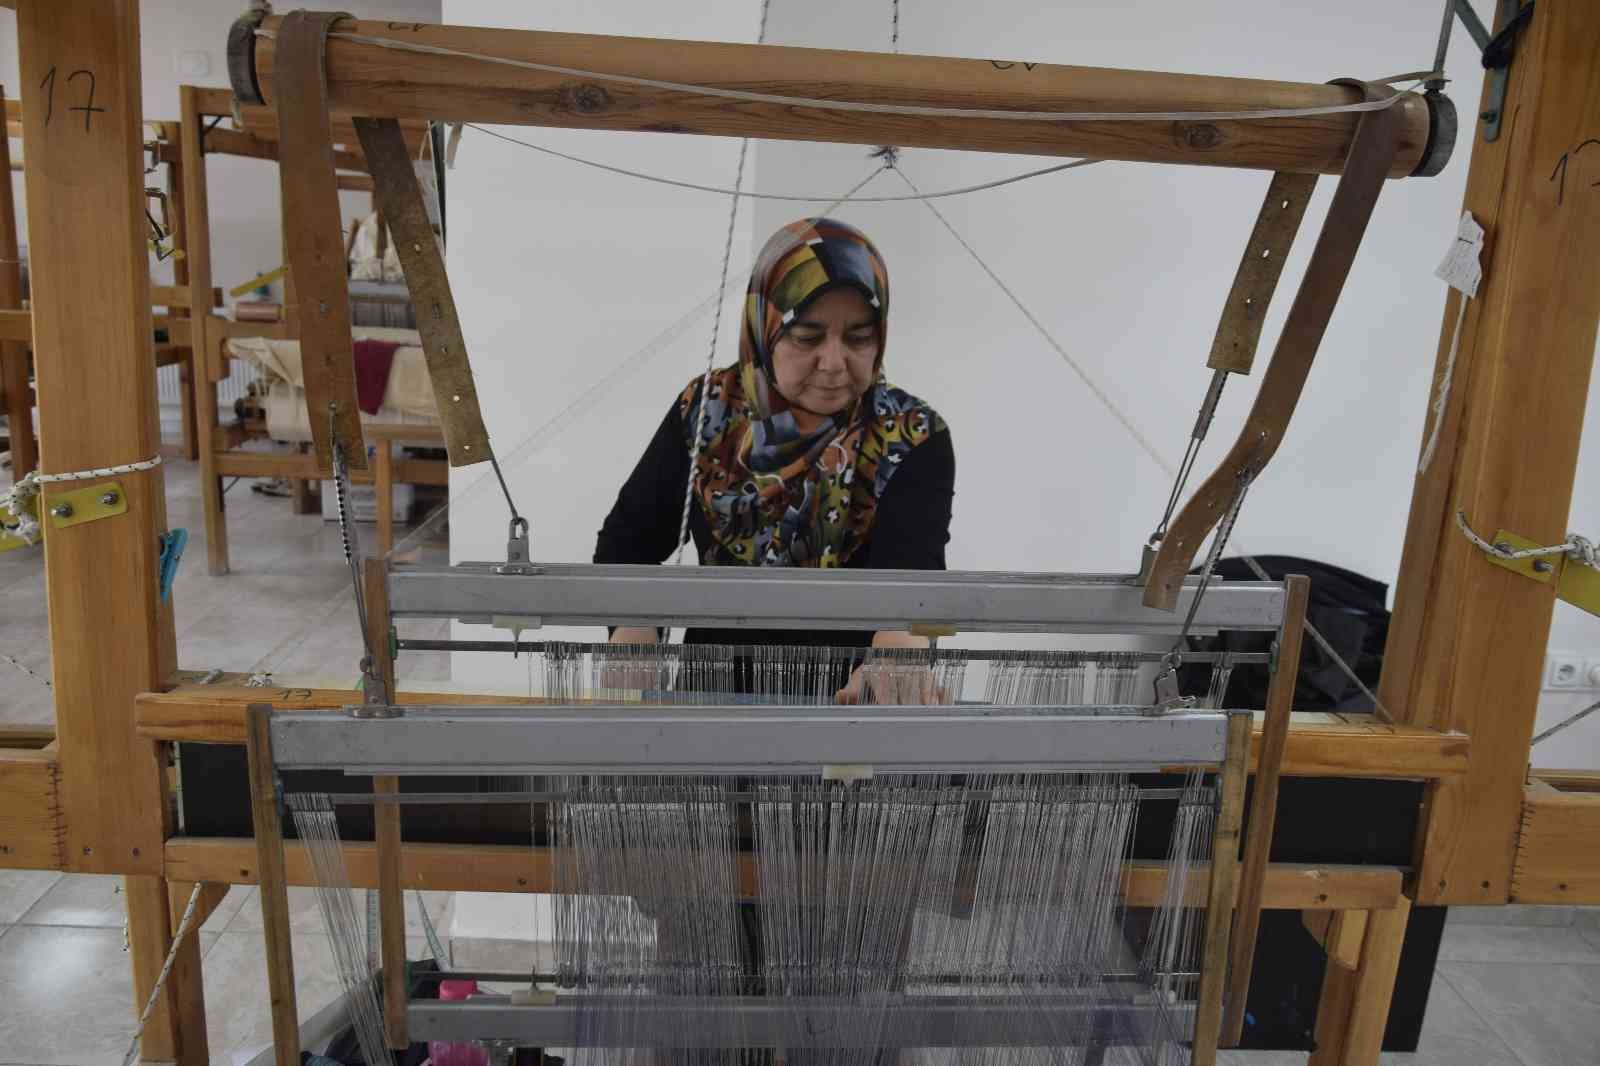 Burdurlu kadınlar 300 yıllık Alaca dokumayı ilmek ilmek dokuyarak yaşatıyor #burdur